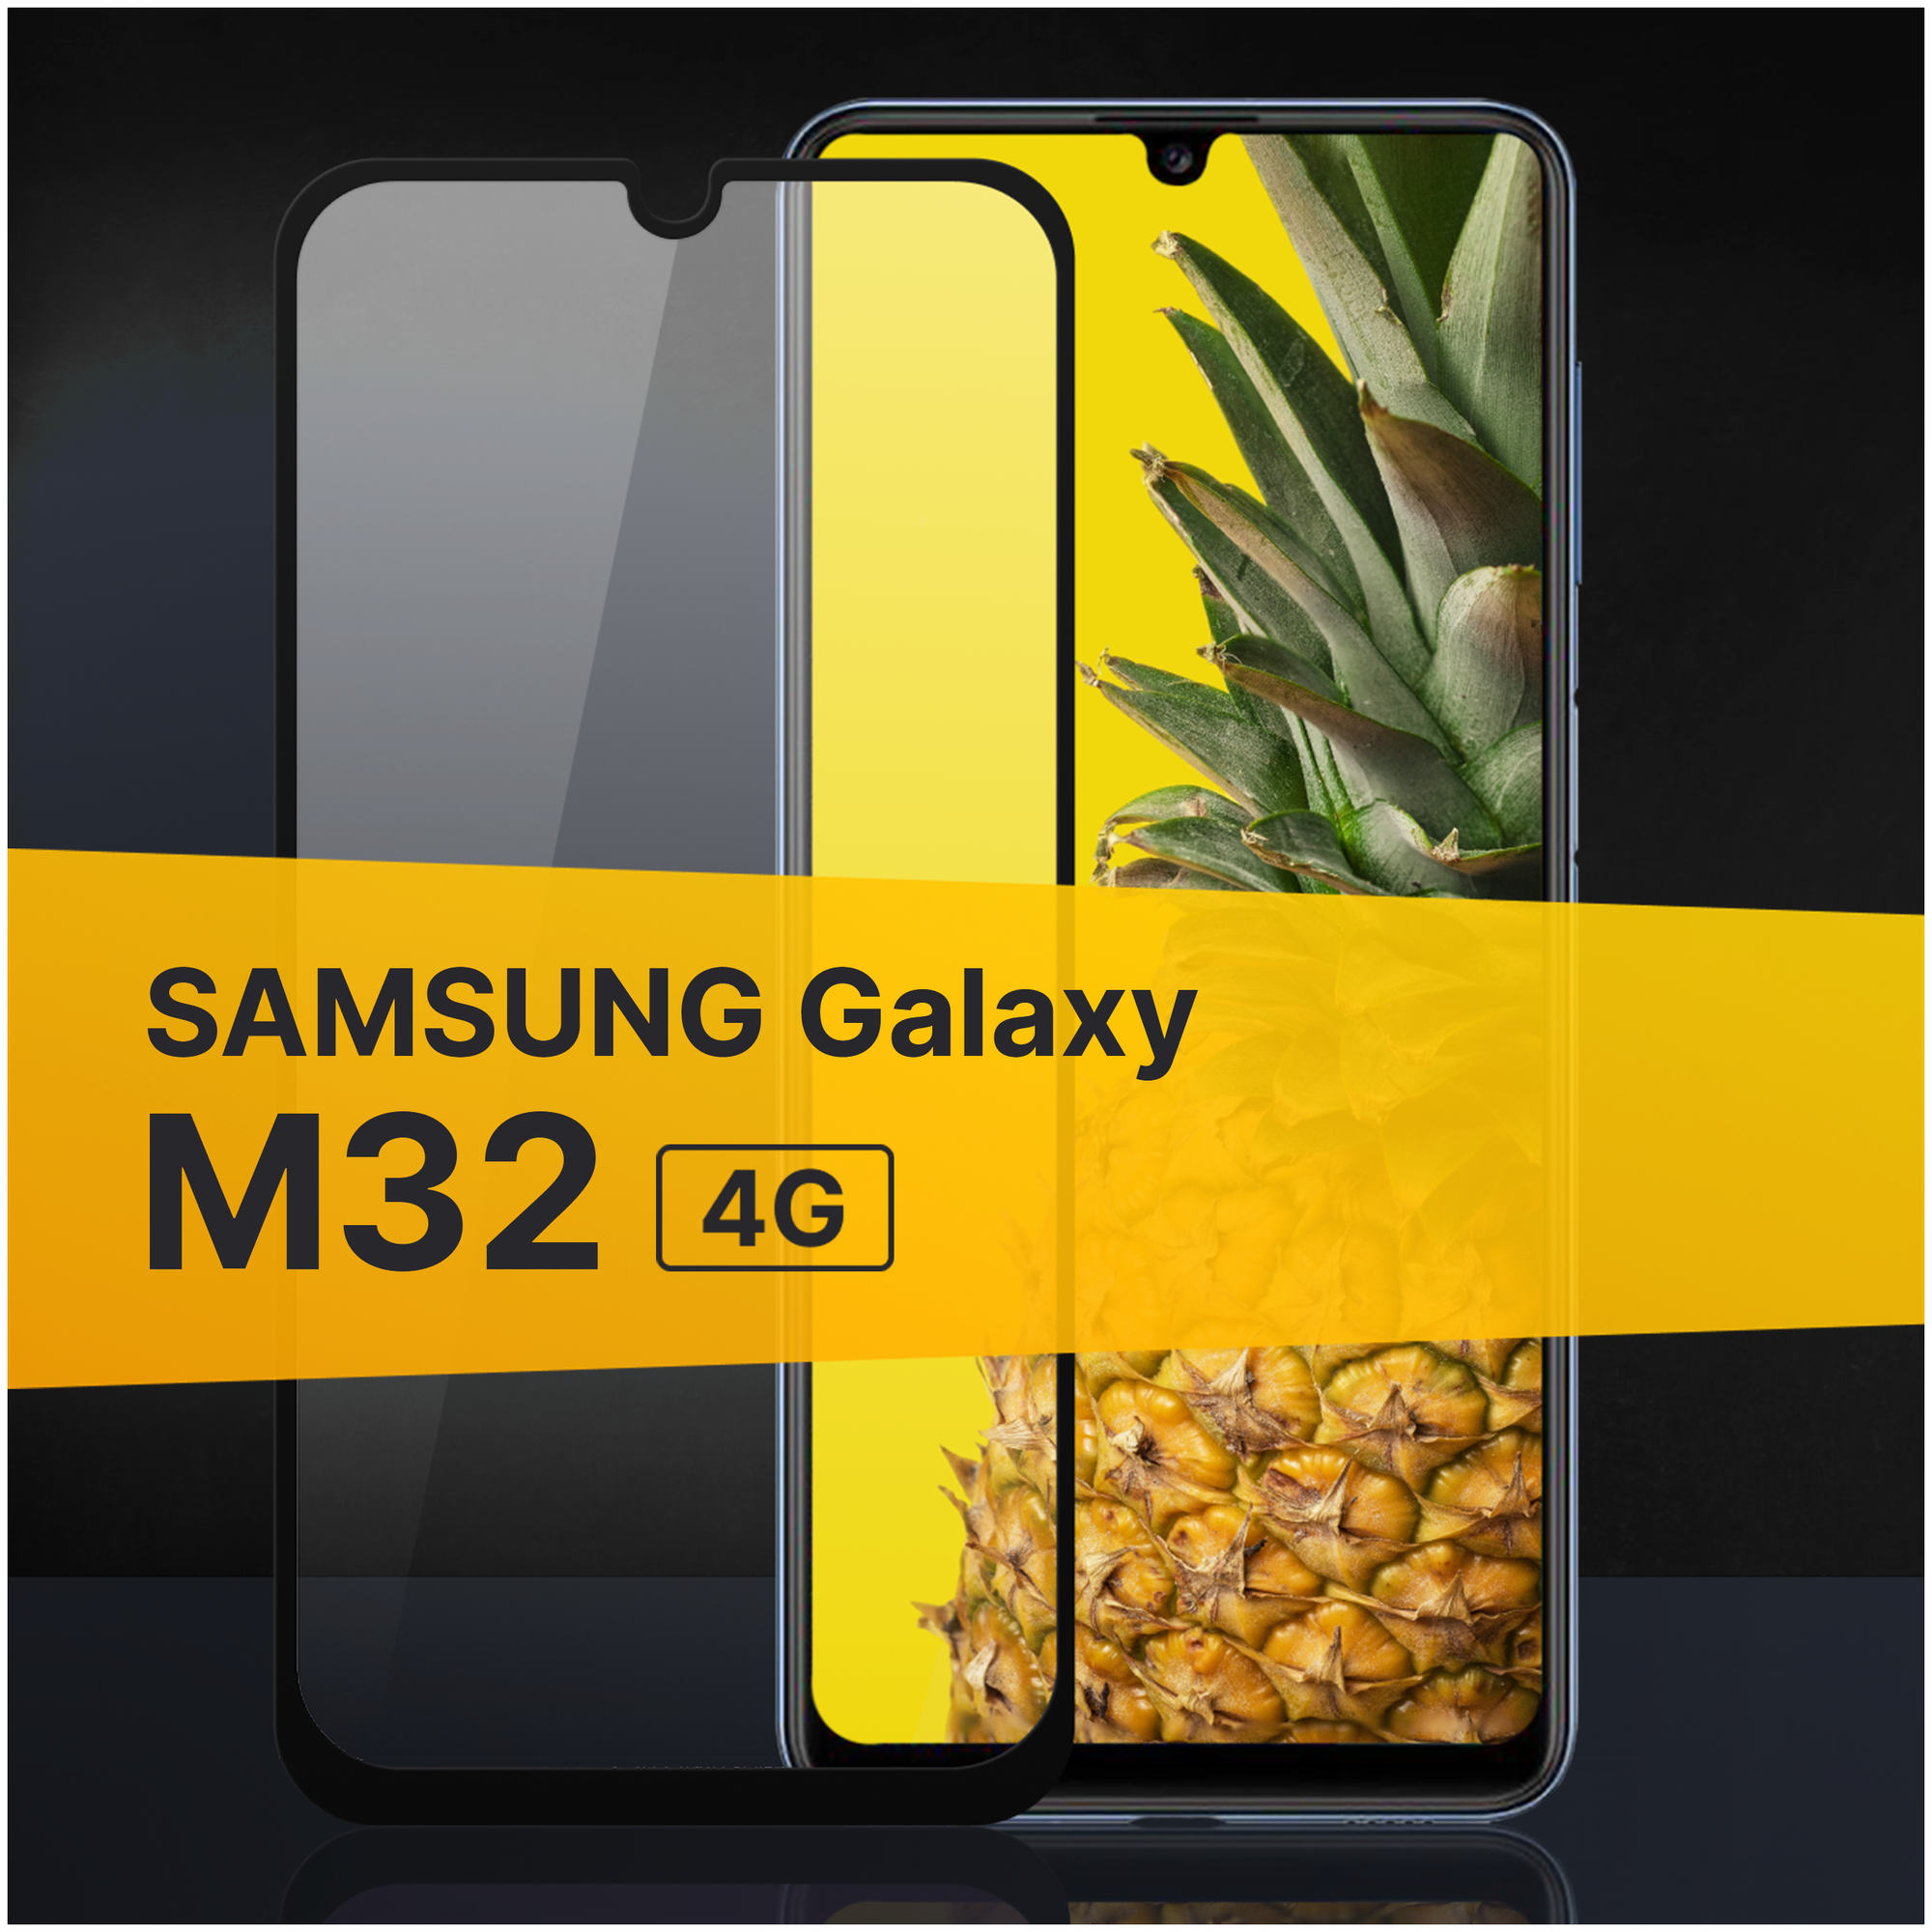 Противоударное защитное стекло для телефона Samsung Galaxy M32 4G / Полноклеевое 3D стекло с олеофобным покрытием на смартфон Самсунг Галакси М32 4Г / С черной рамкой